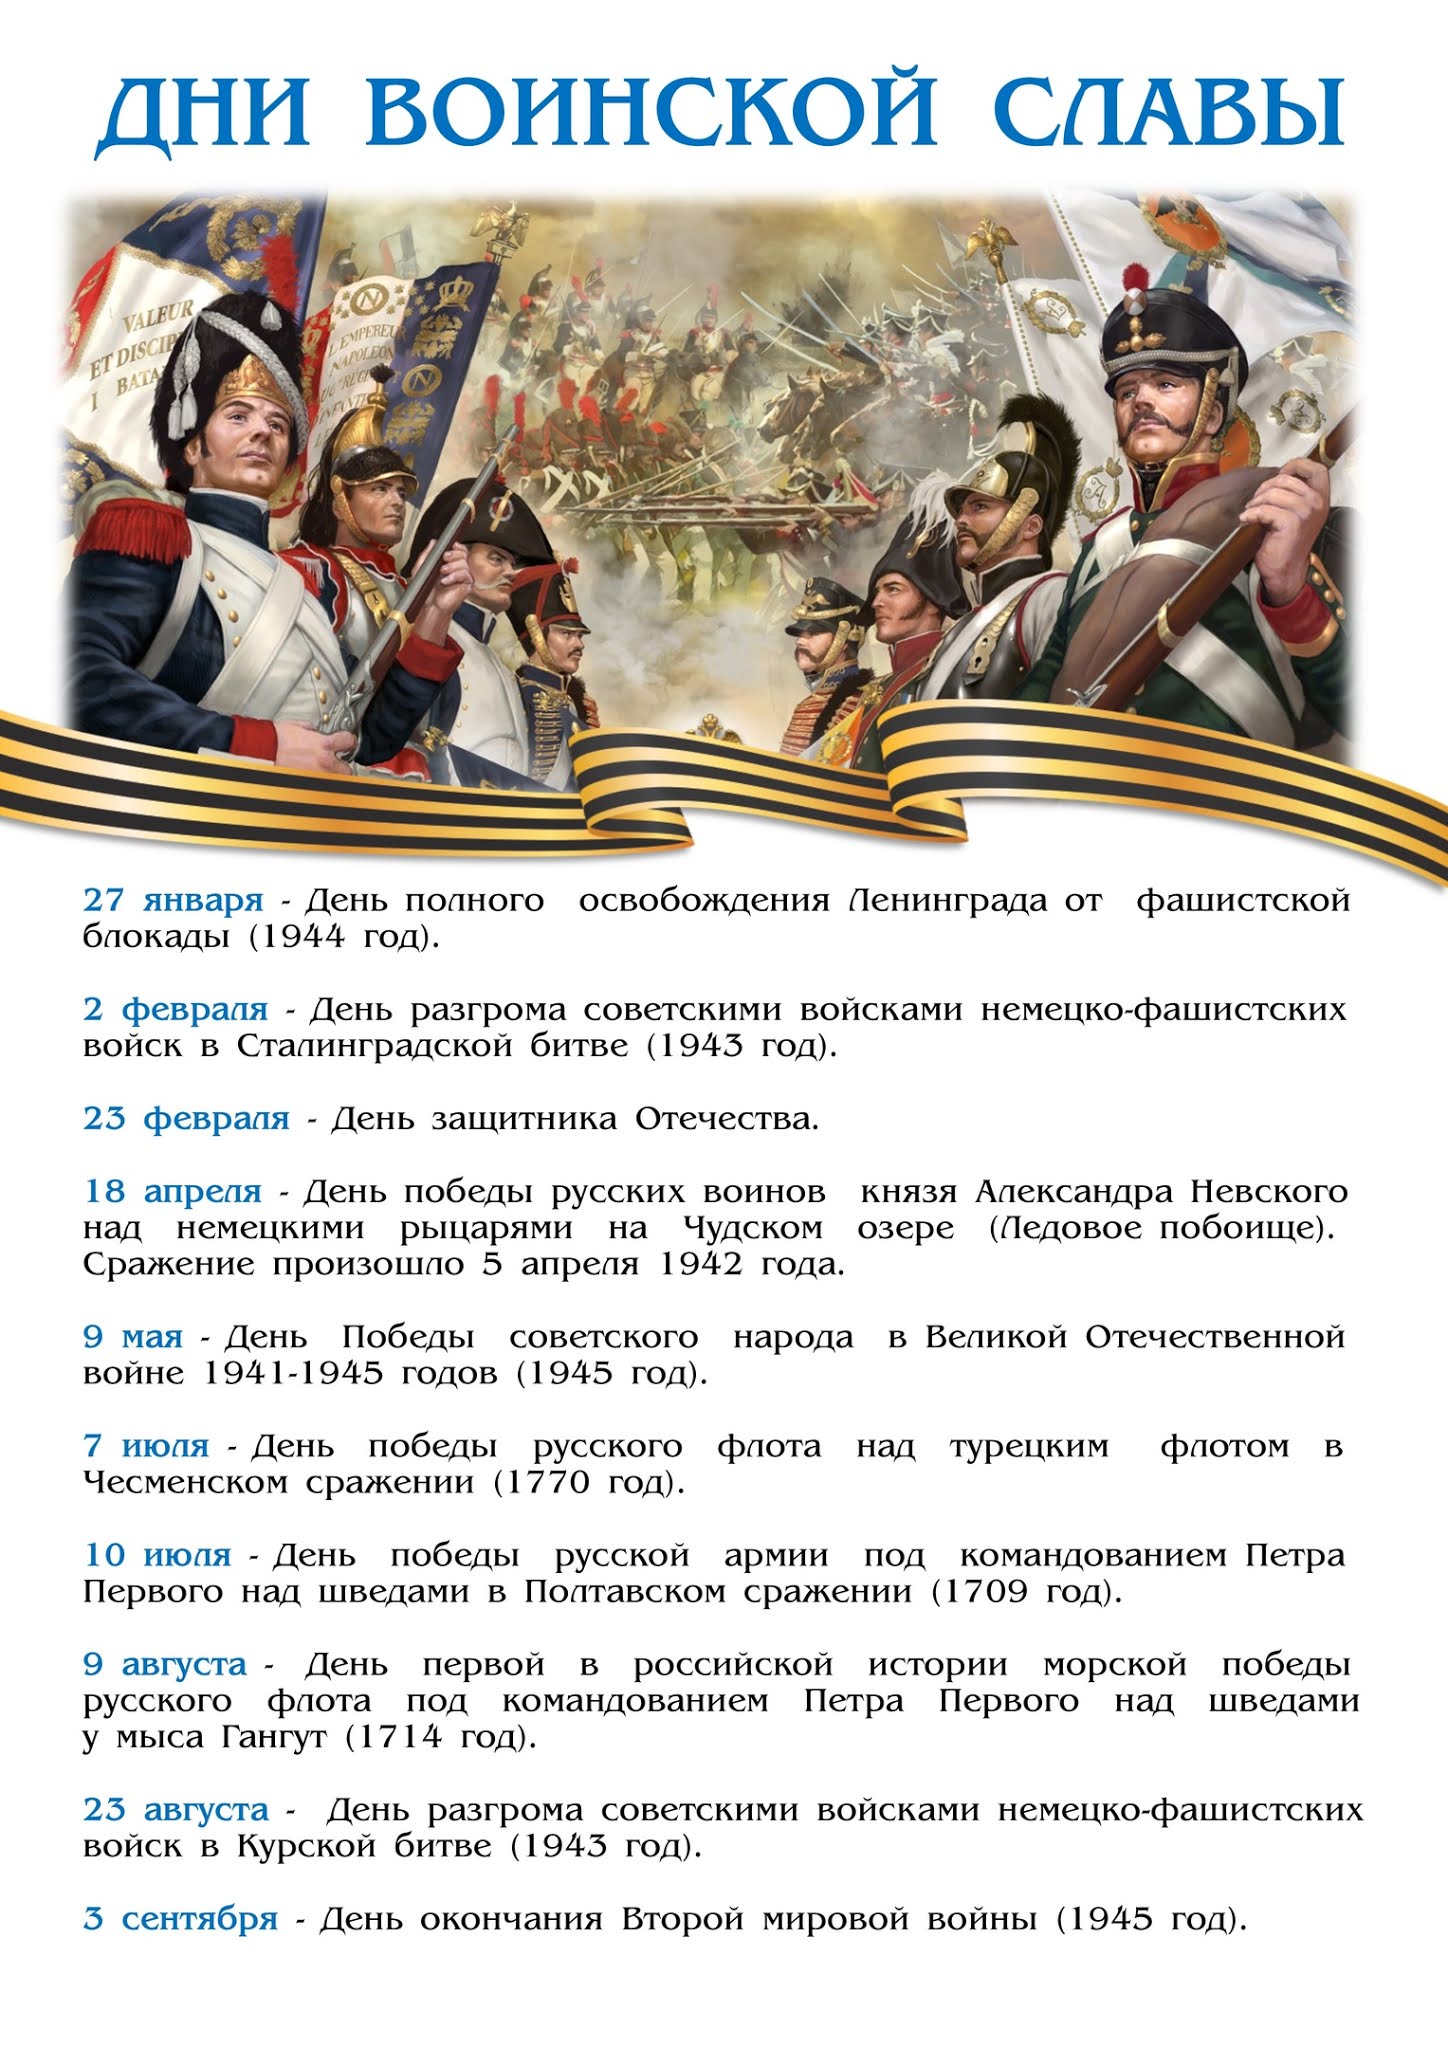 Праздники дни воинской славы россии